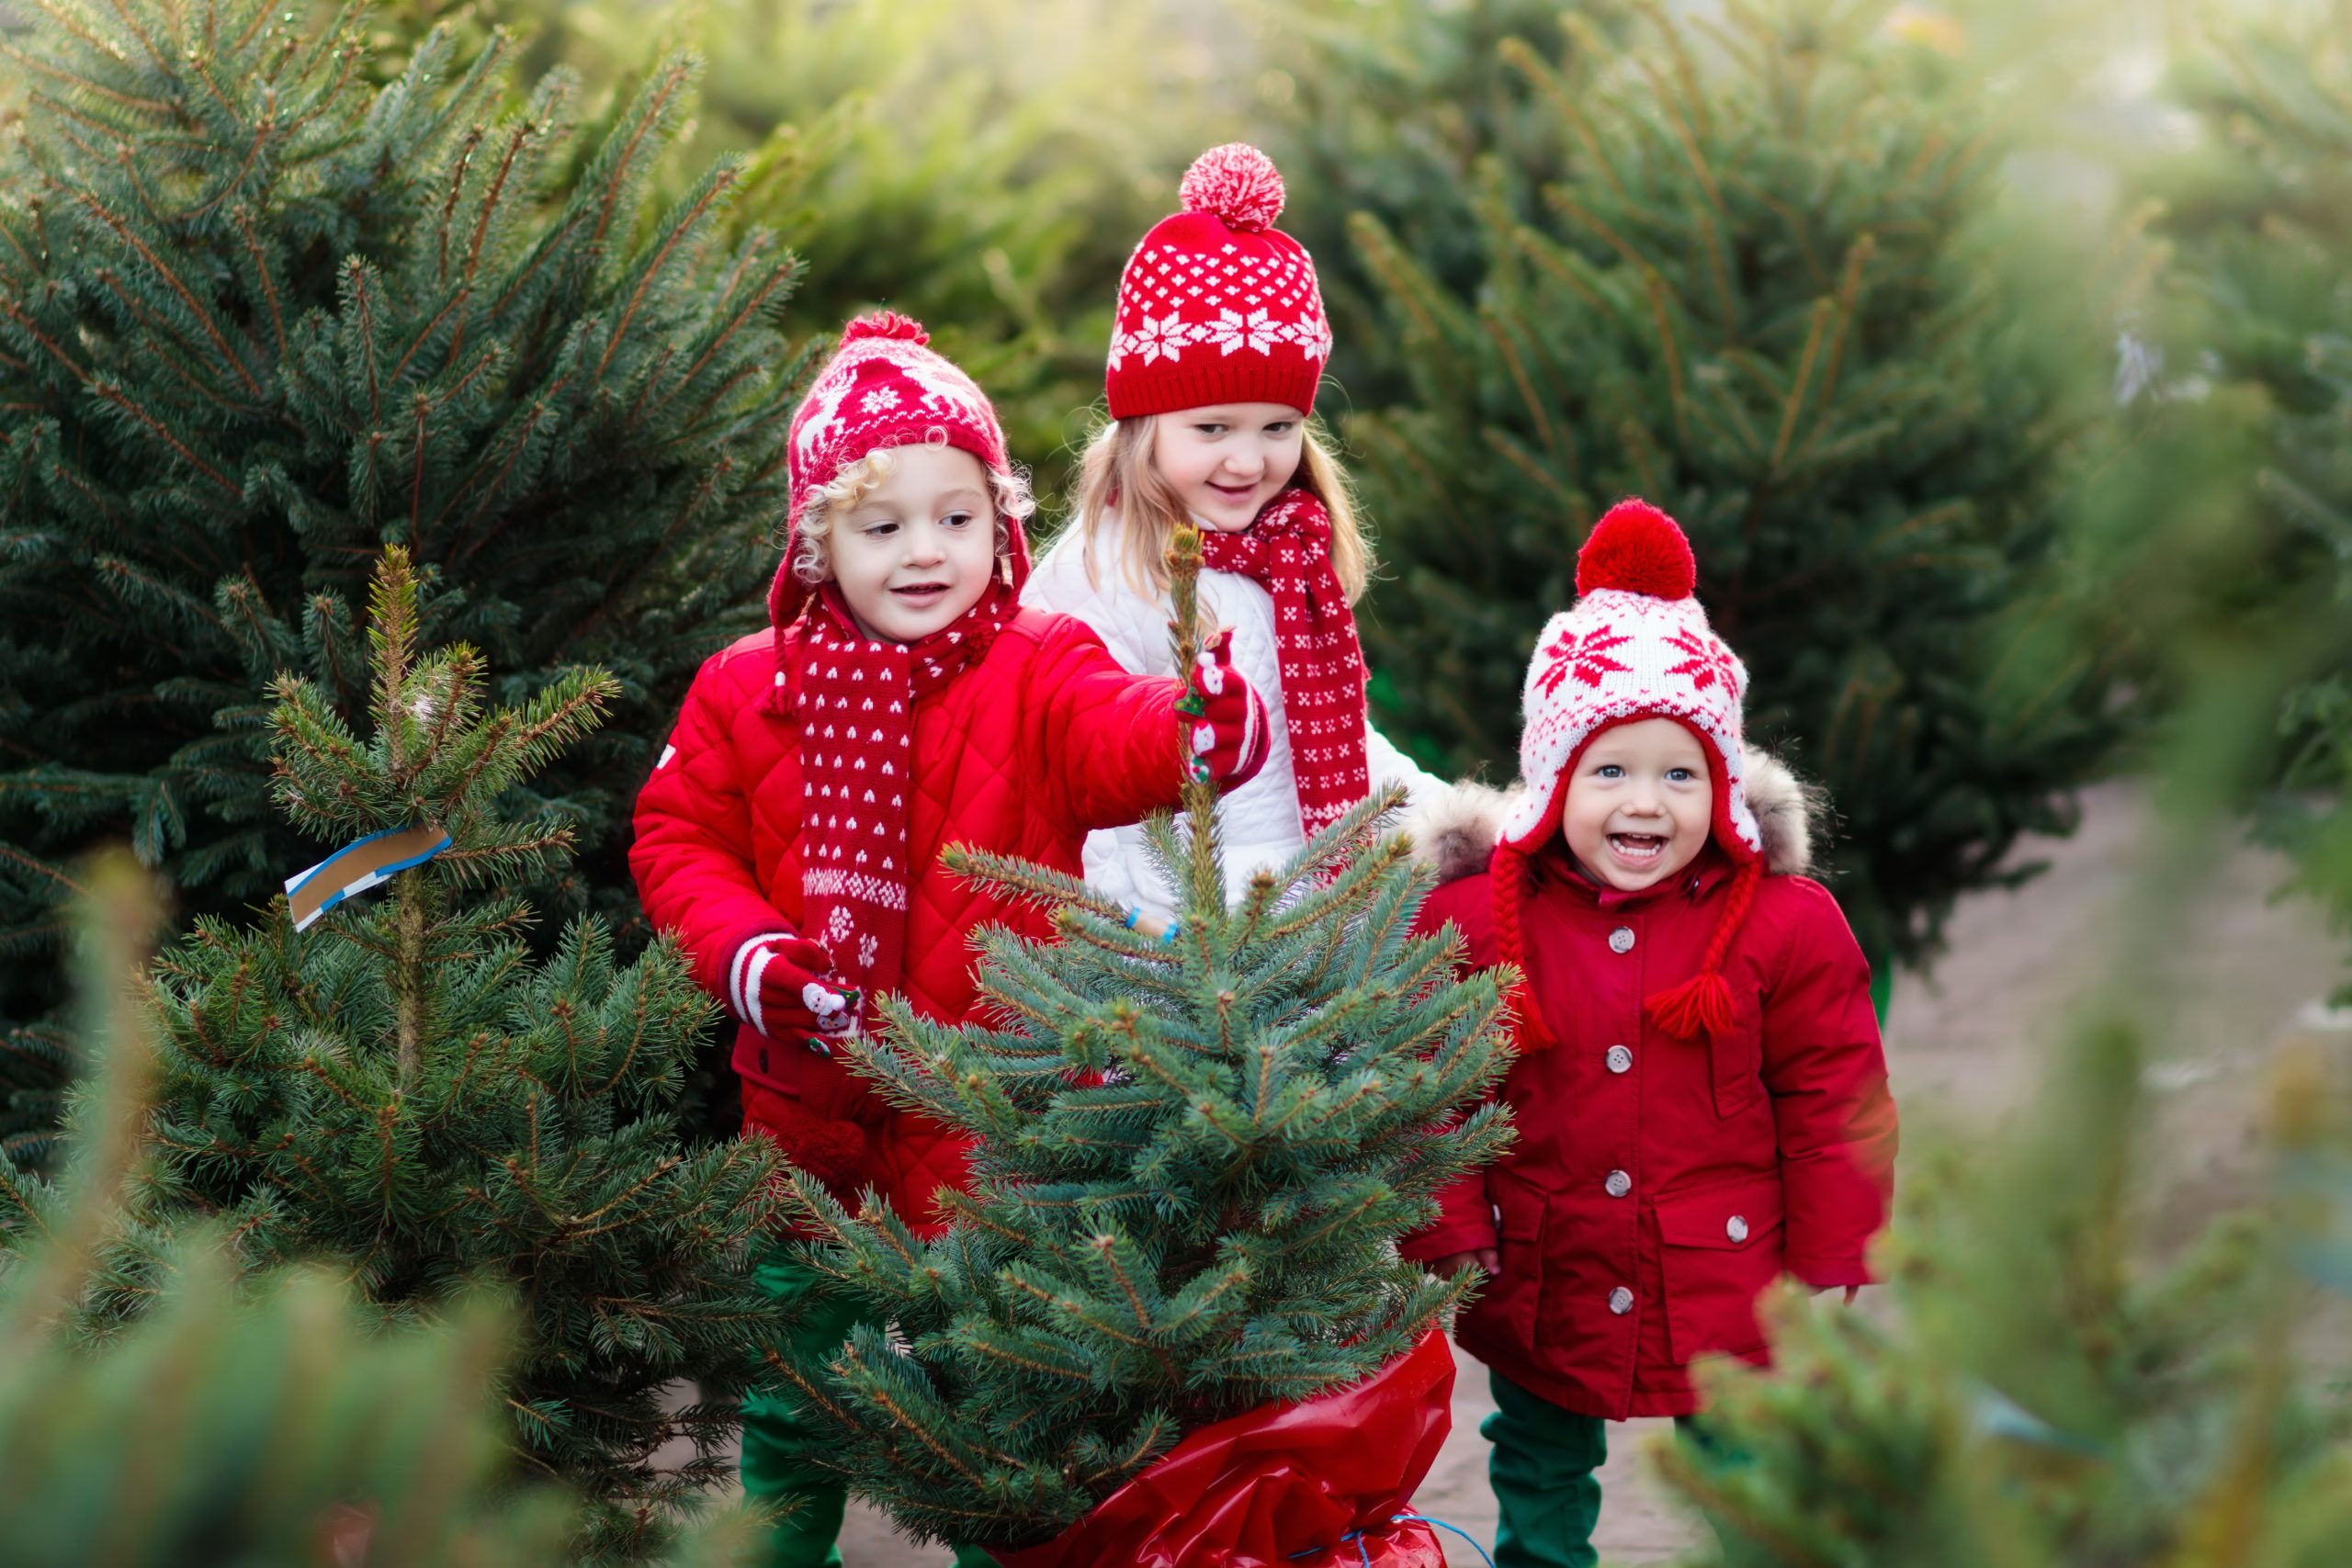 Trois enfants avec des bonnets et des moufles rouges profitent de fêtes en présentant un sapin de Noël.